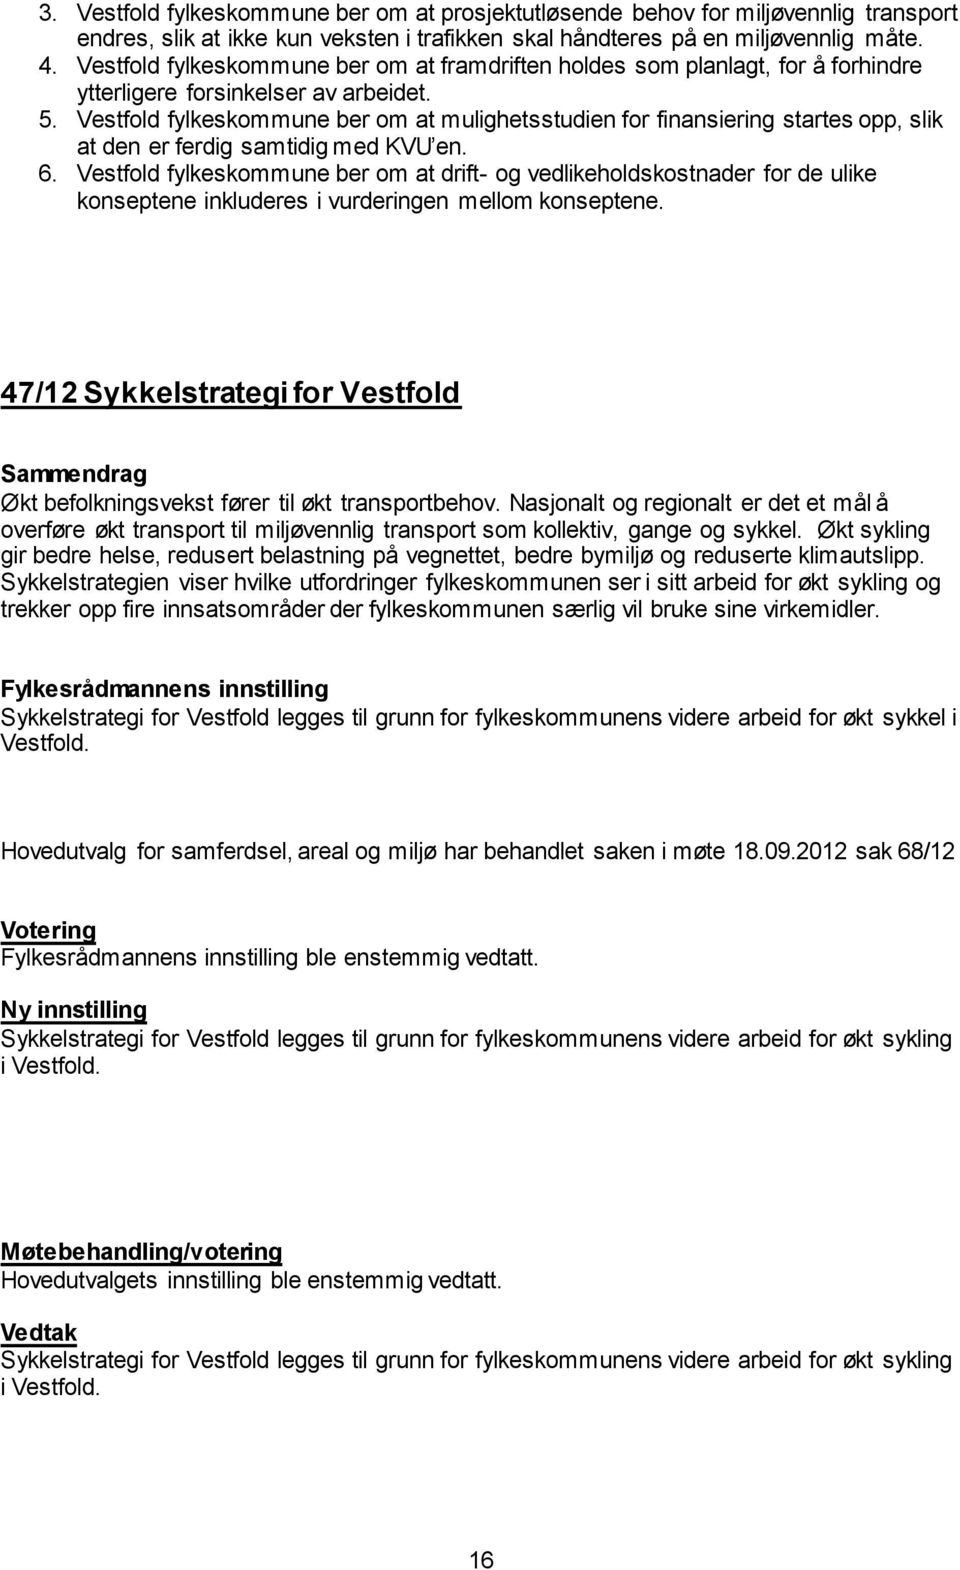 Vestfold fylkeskommune ber om at mulighetsstudien for finansiering startes opp, slik at den er ferdig samtidig med KVU en. 6.